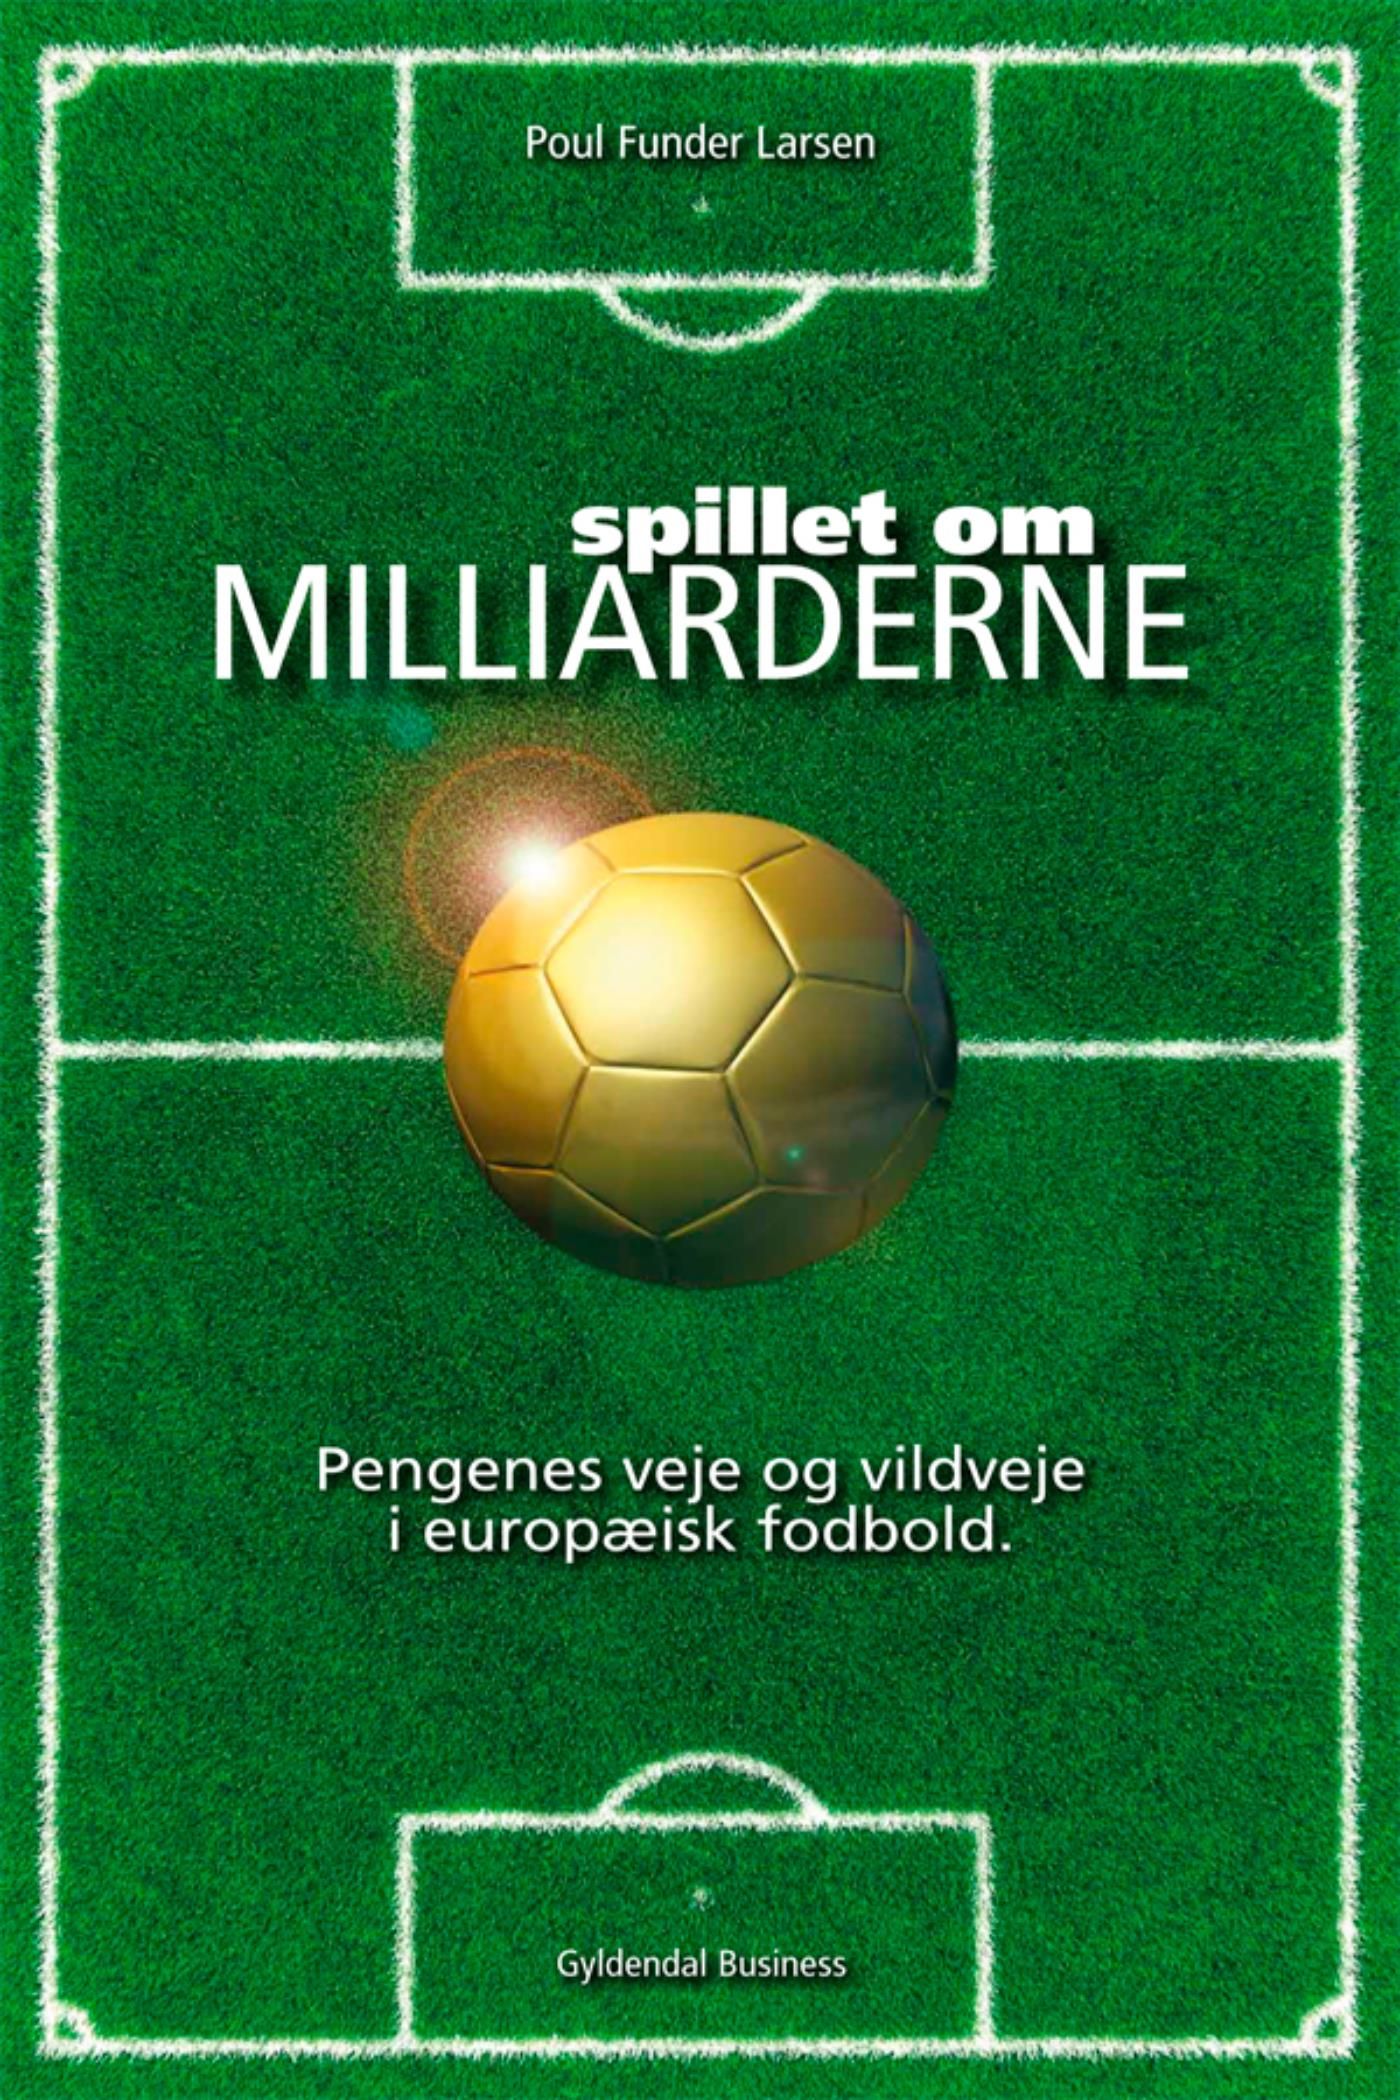 Spillet om milliarderne, eBook by Poul Funder Larsen